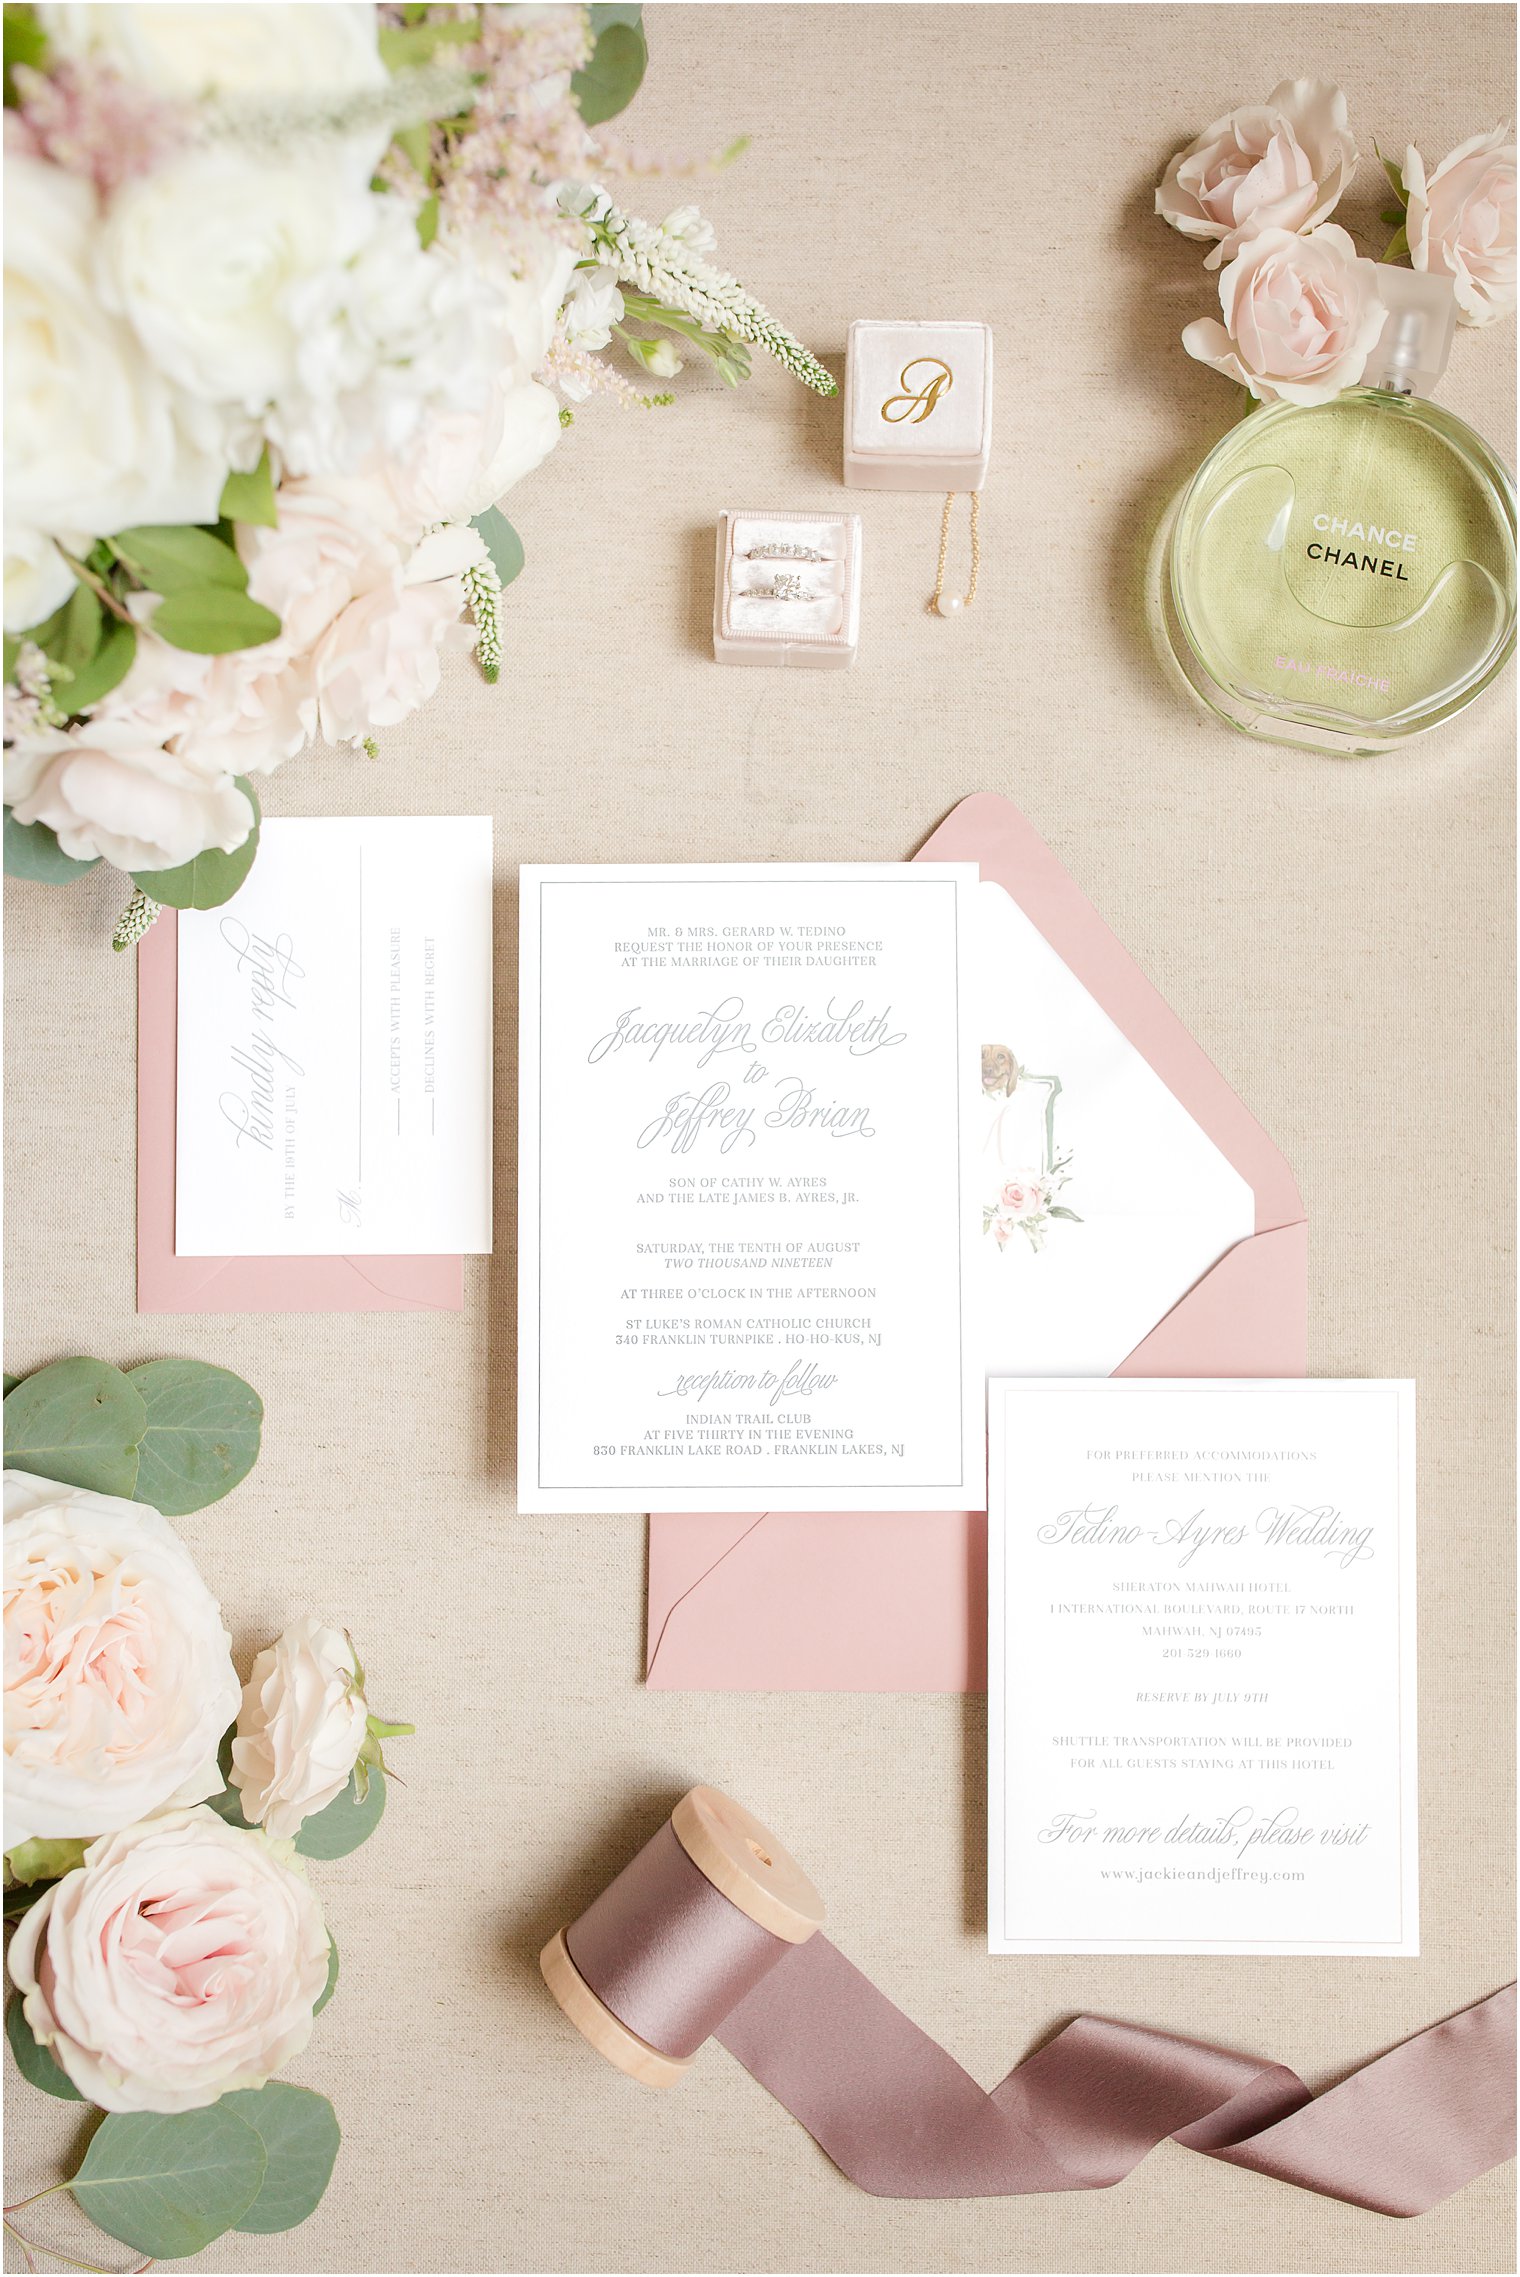 Wedding invite by Narrative Design Co